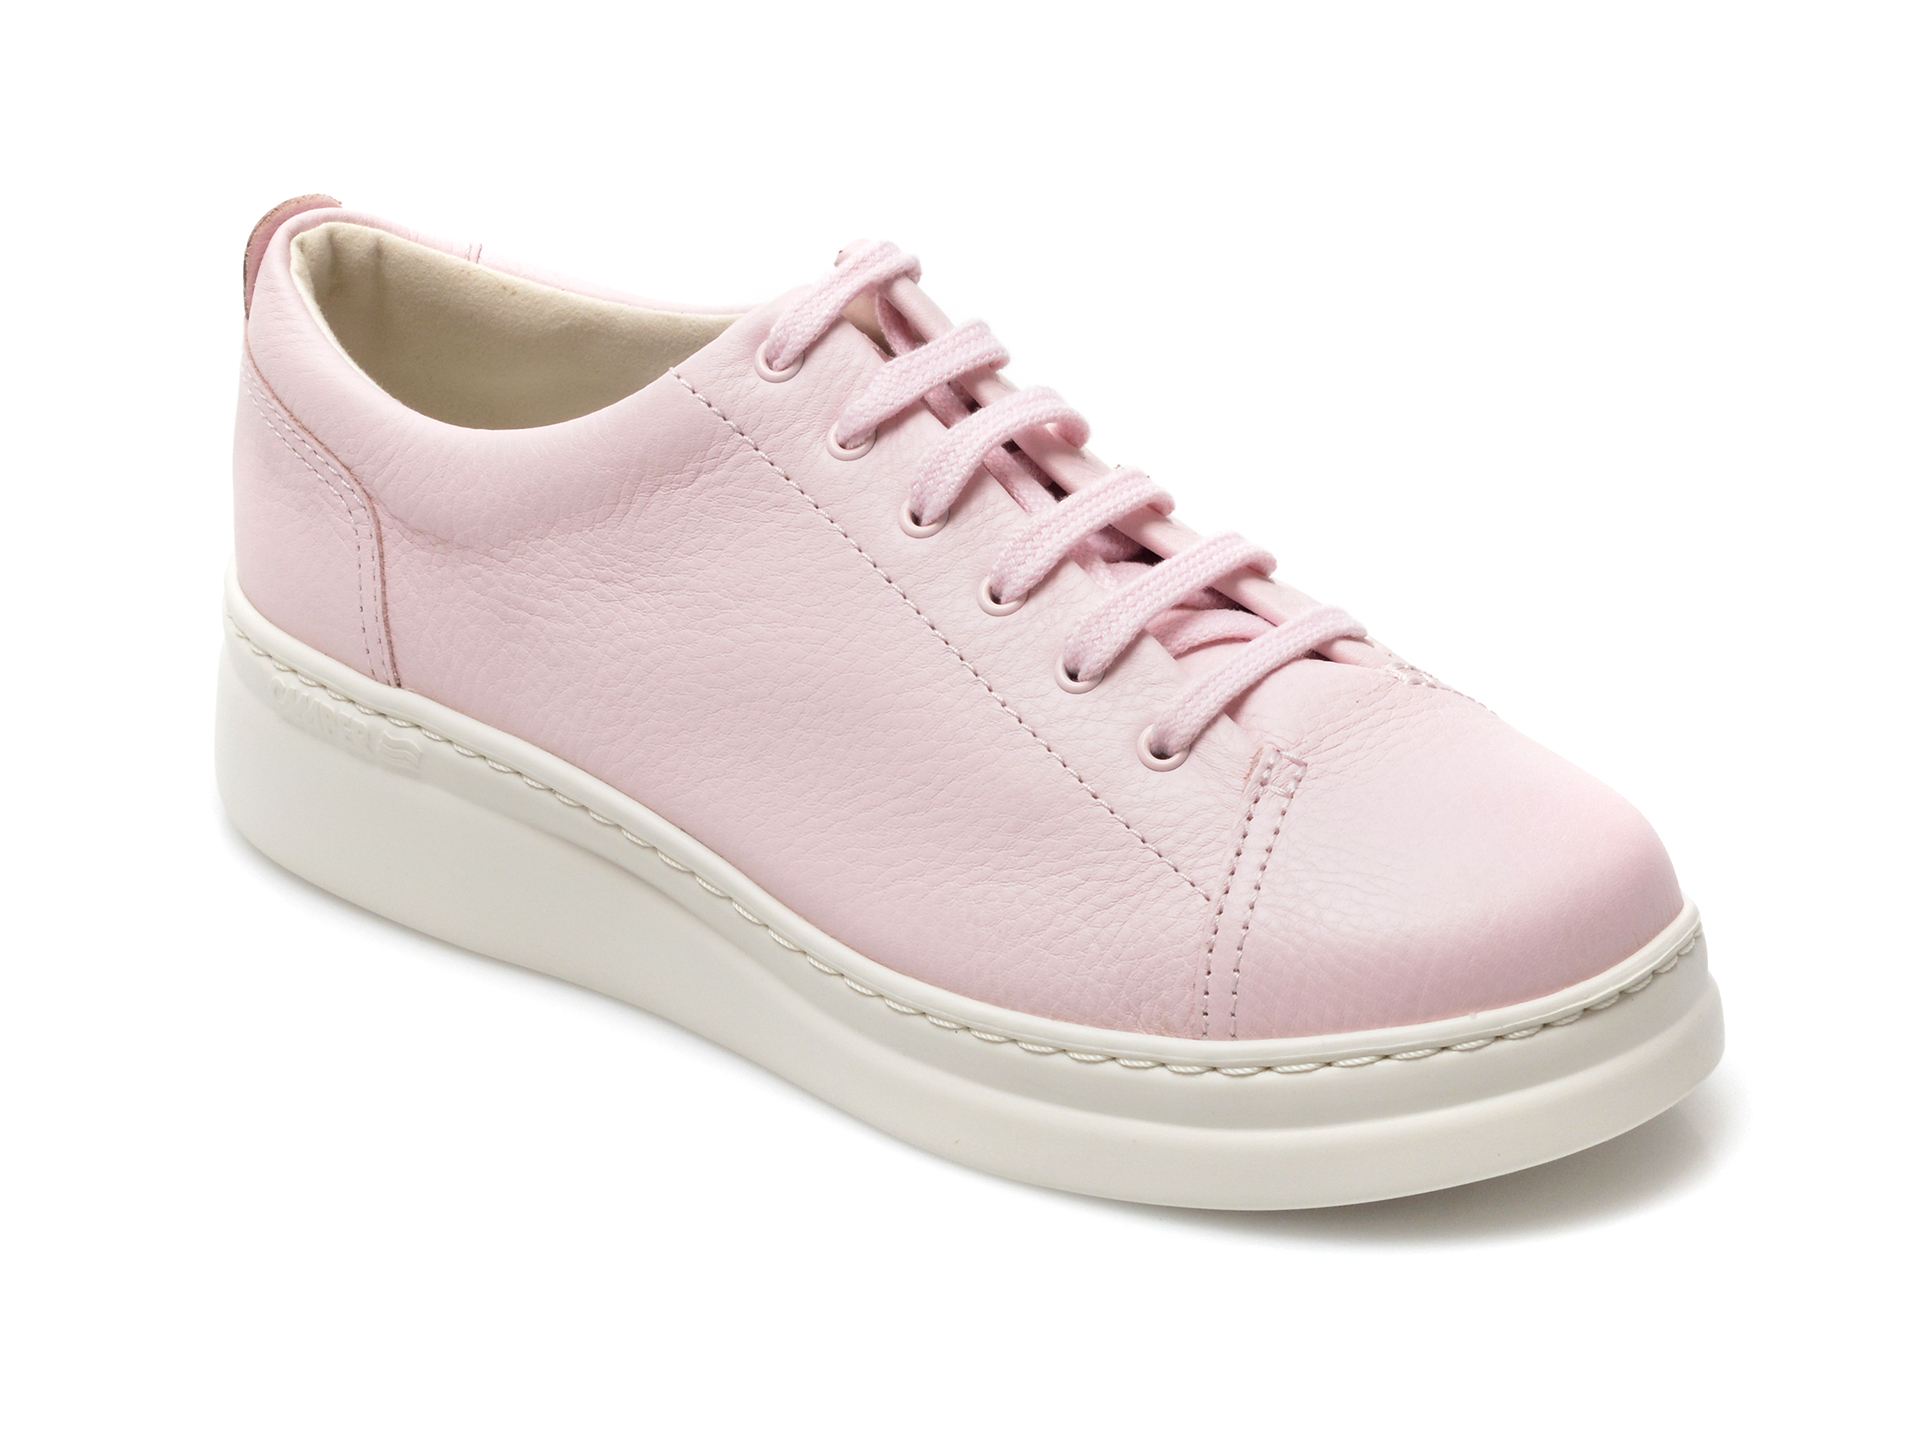 Pantofi CAMPER roz, K200508, din piele naturala Camper